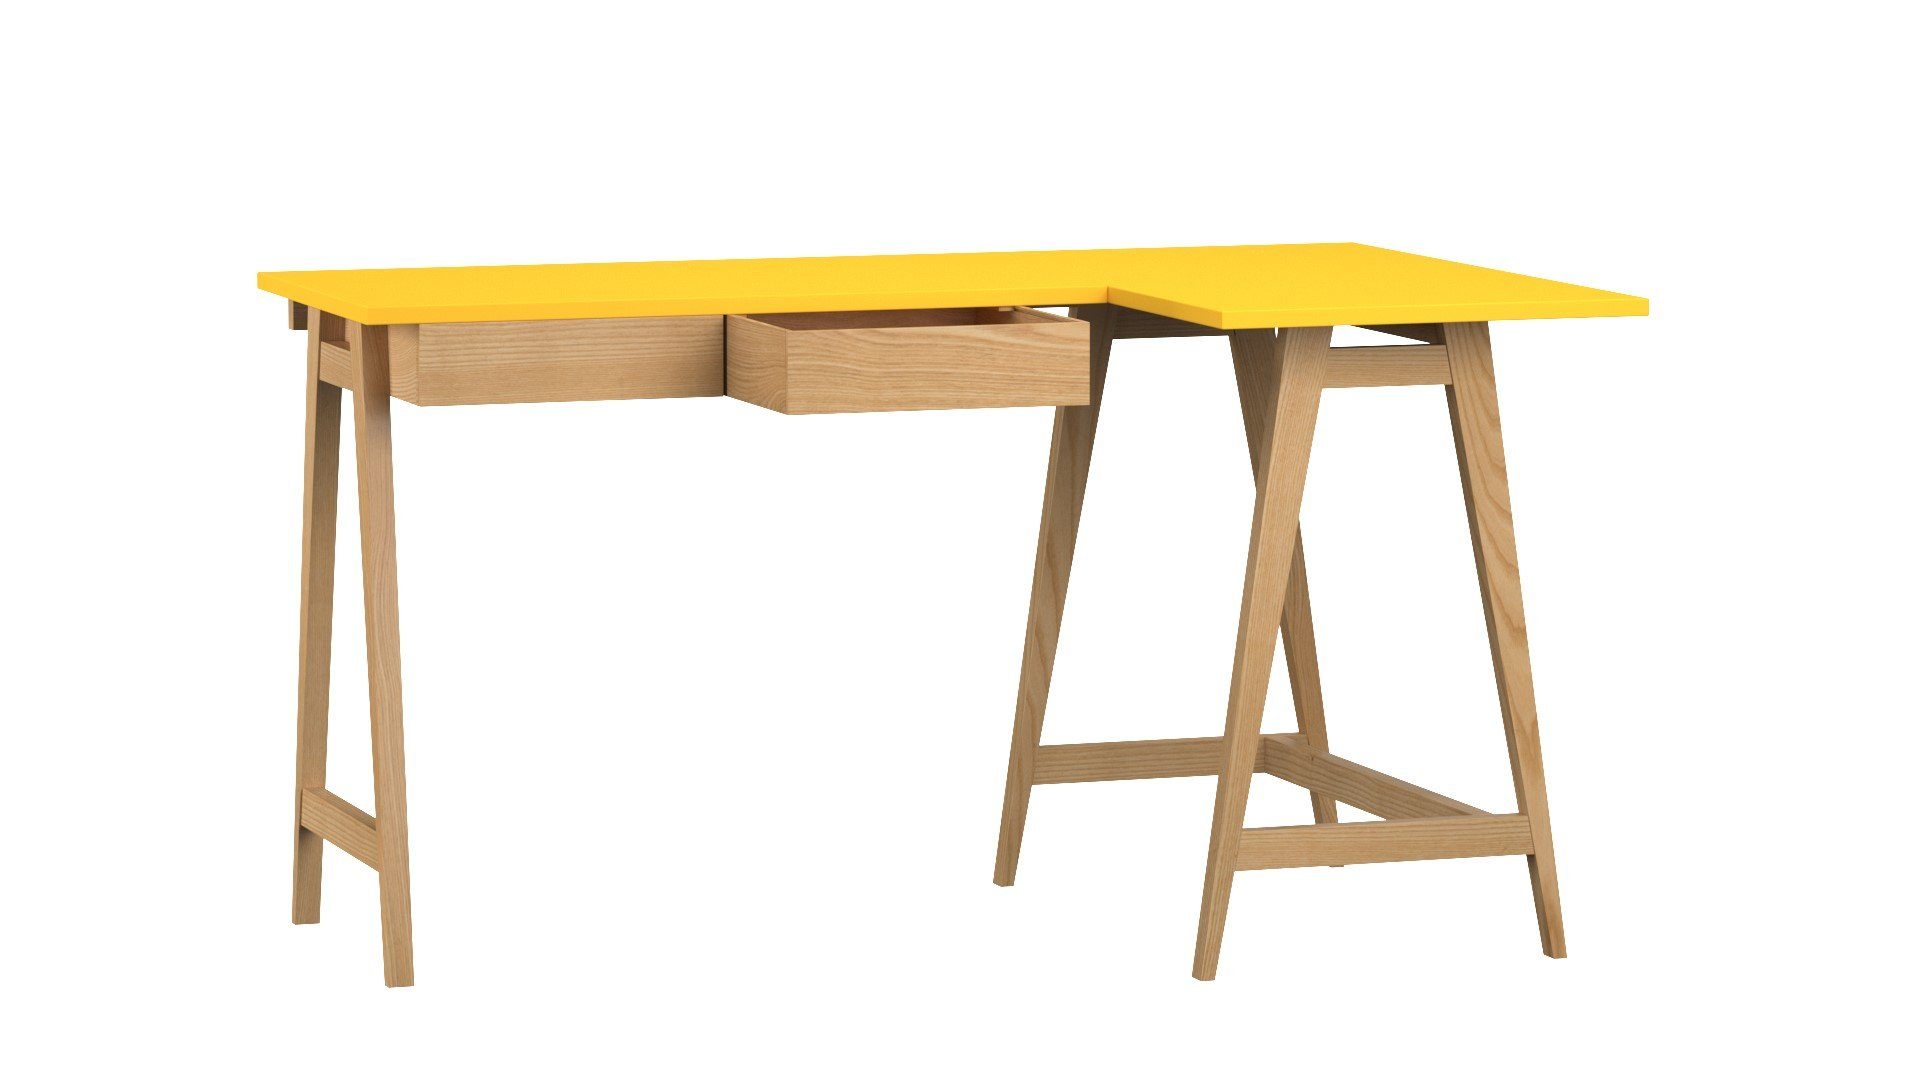 Katia - Moderner Schubladen) Schubladen Design mit Eckschreibtisch mit Schreibtisch Siblo Schreibtisch (Eckschreibtisch Jugendzimmer - - Eschenholz Kinderzimmer - Gelb MDF-Platte - Katia minimalistisches -